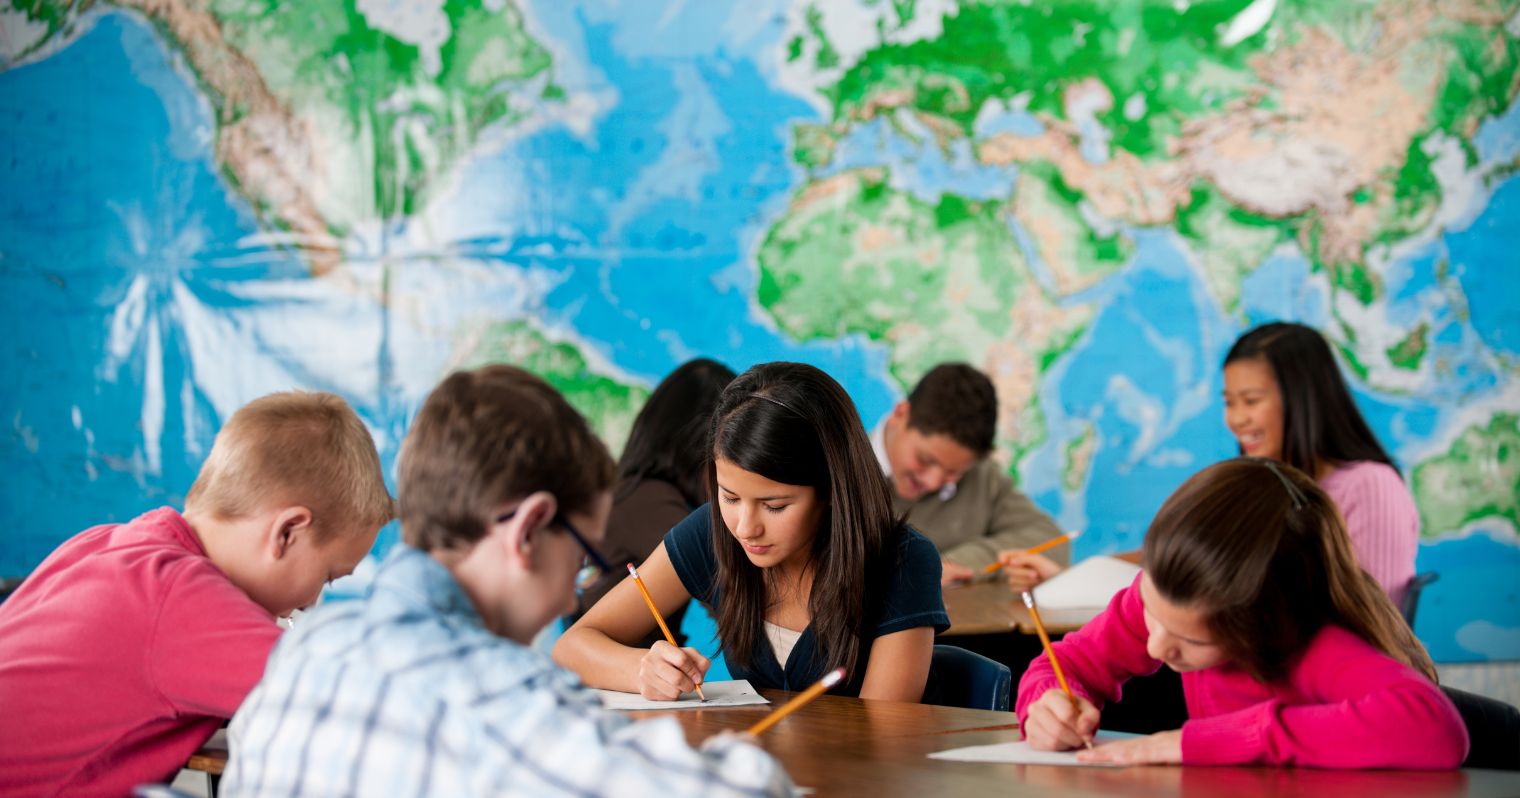 PISA felmérés - tanulók a tanteremben, mögöttük világtérkép